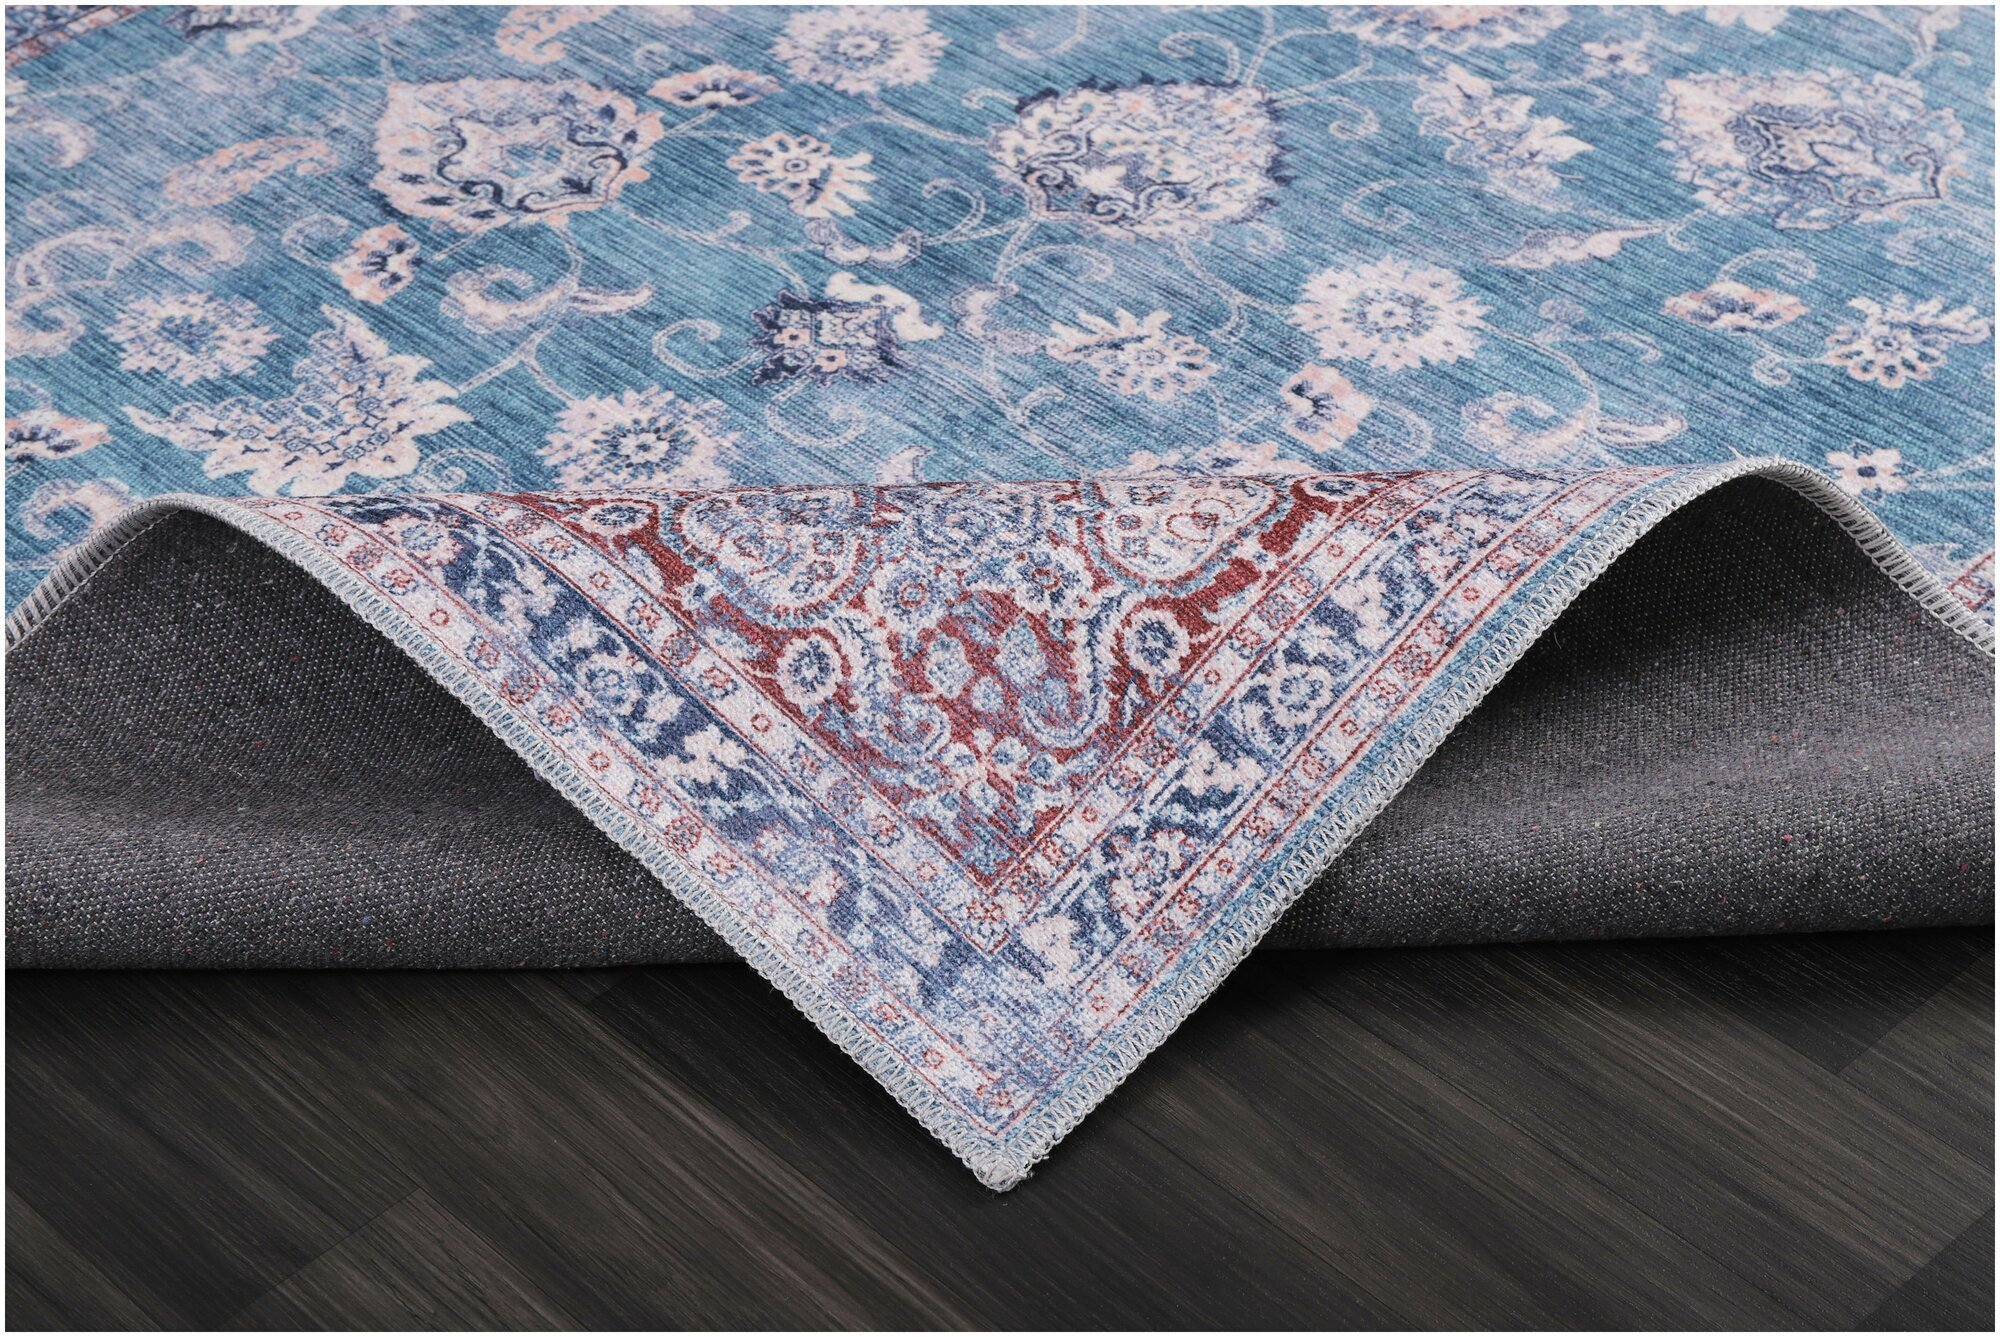 Ковер для бильярдной, для коридора хлопковый, ковер турецкий килим, DivaHome,2.0X 2.9 м, с оригинальным орнаментом.